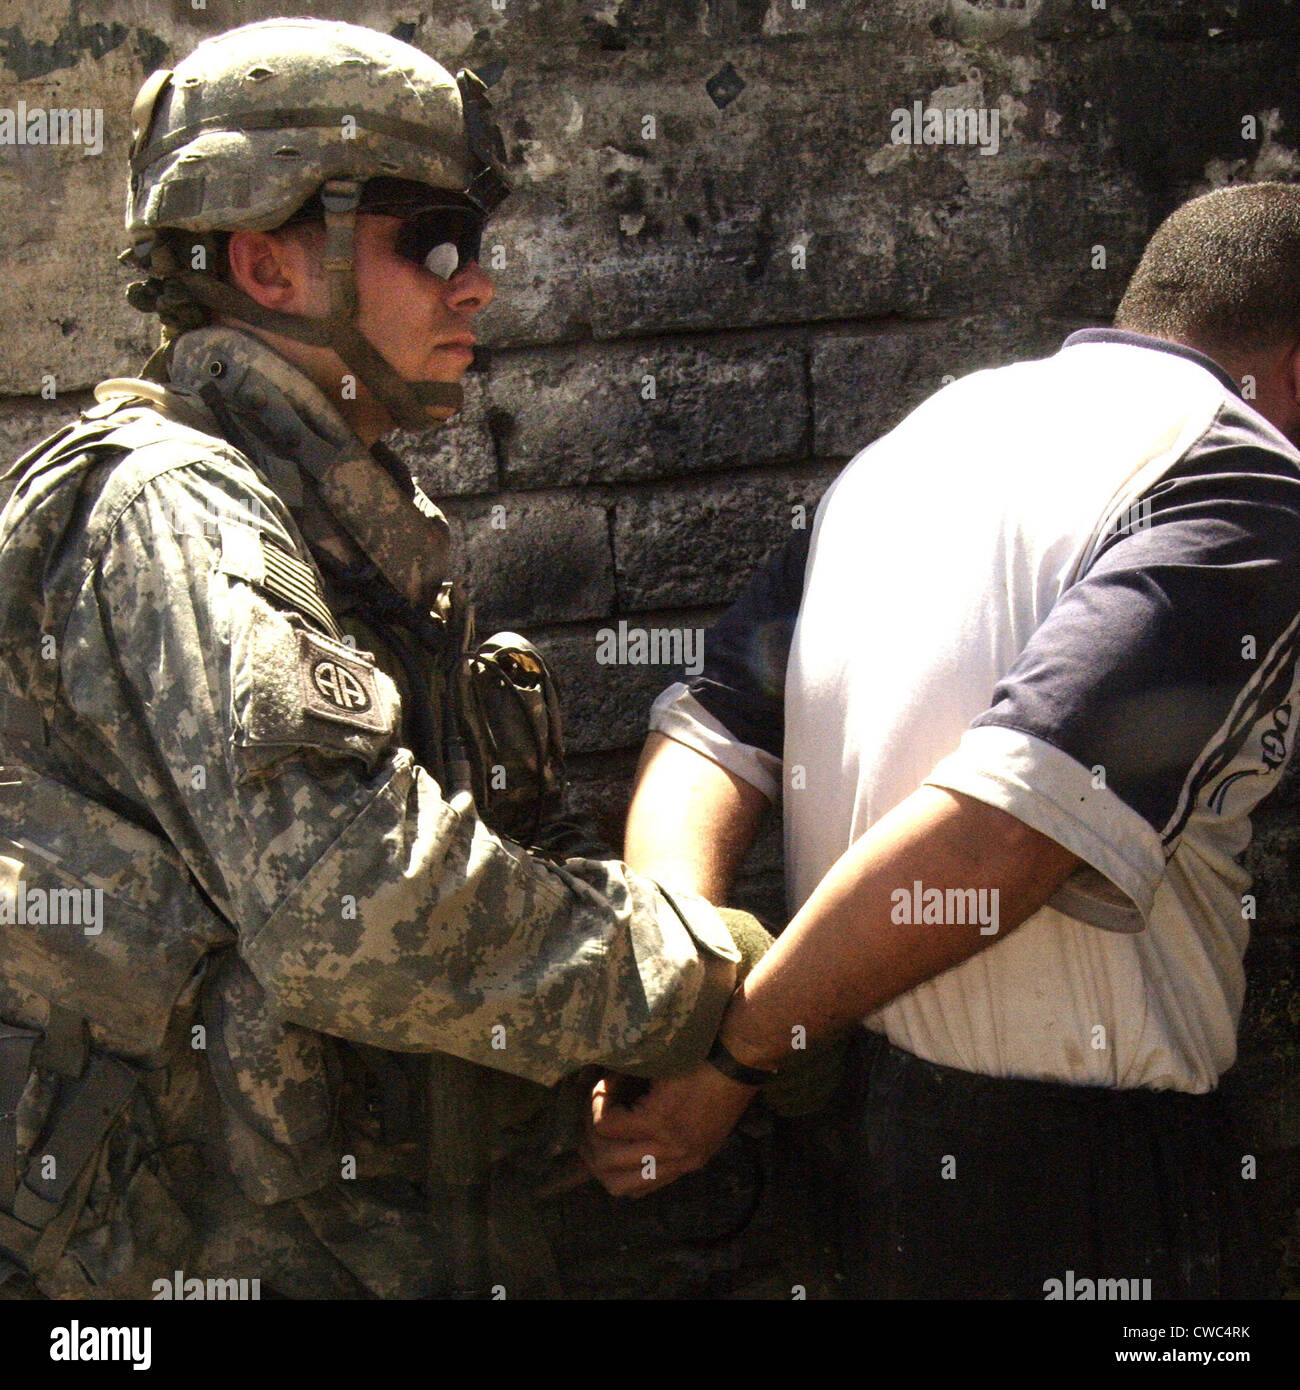 US-Soldat Bündchen einen irakische Mann verdächtigt, improvisierte Sprengsätze während des Irak Aufstands zu machen. Mosul-Irak. 5. Juni Stockfoto